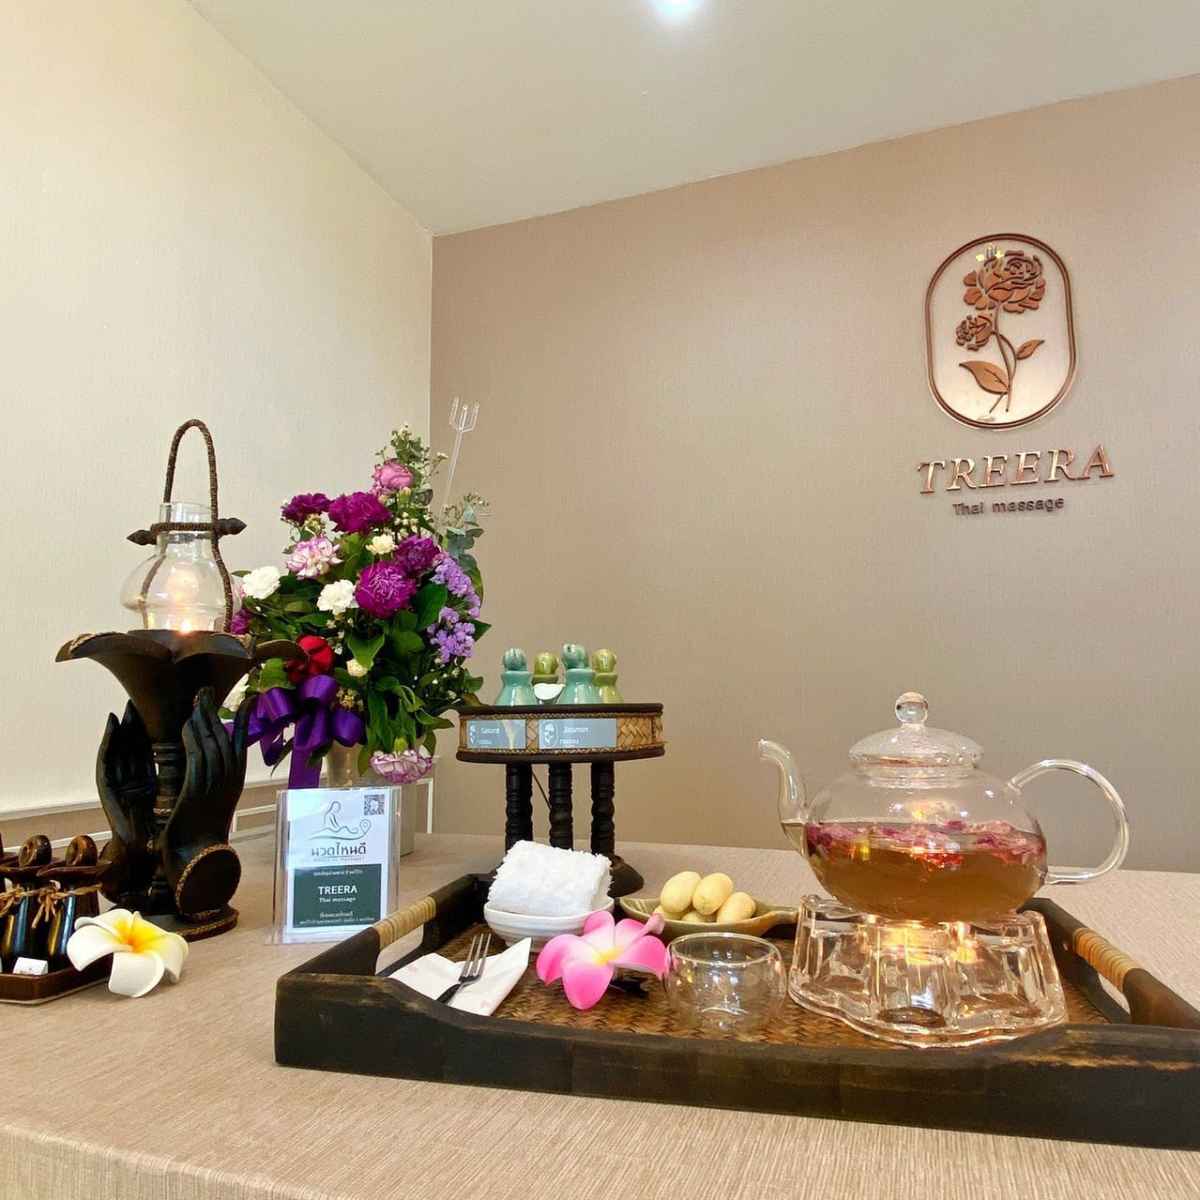 Treera Thai massage and Spa